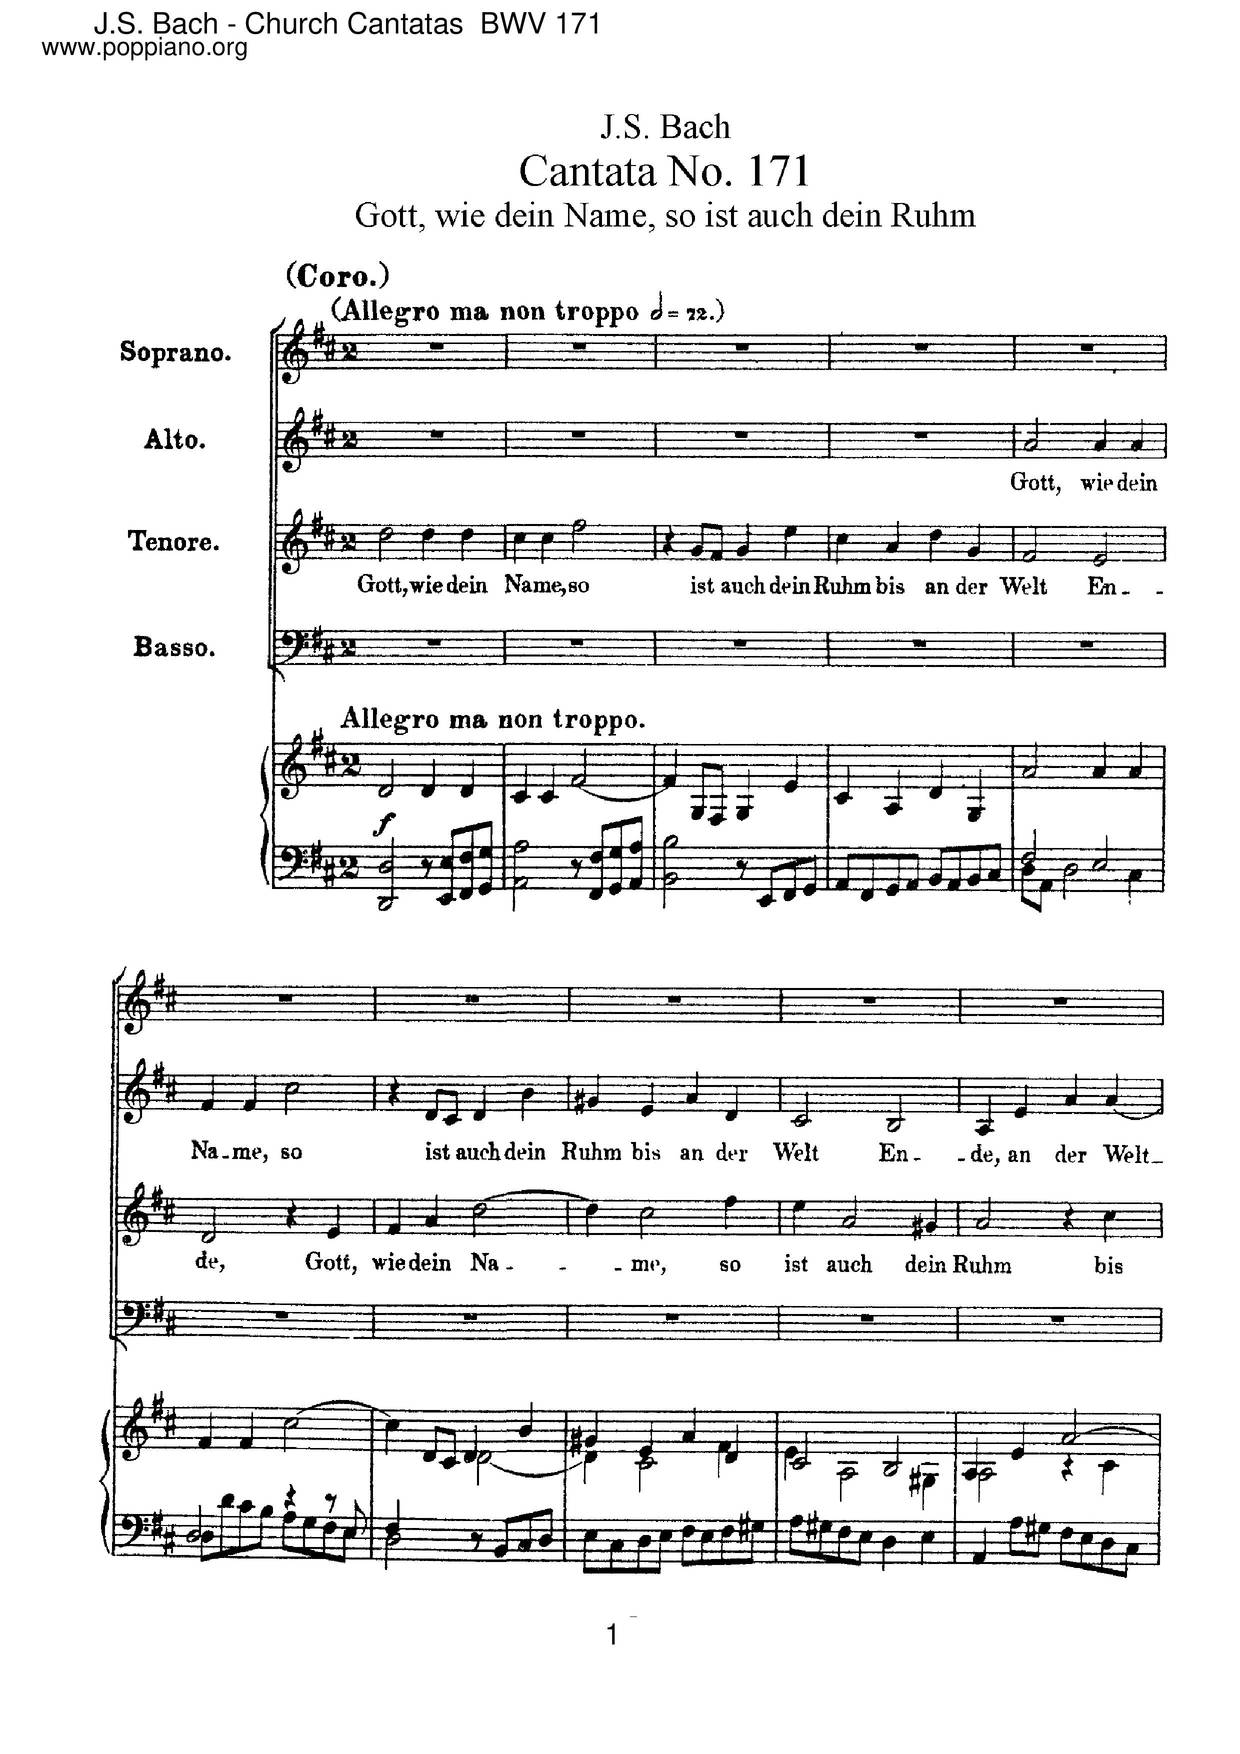 Gott, Wie Dein Name, So Ist Auch Dein Ruhm, BWV 171 Score